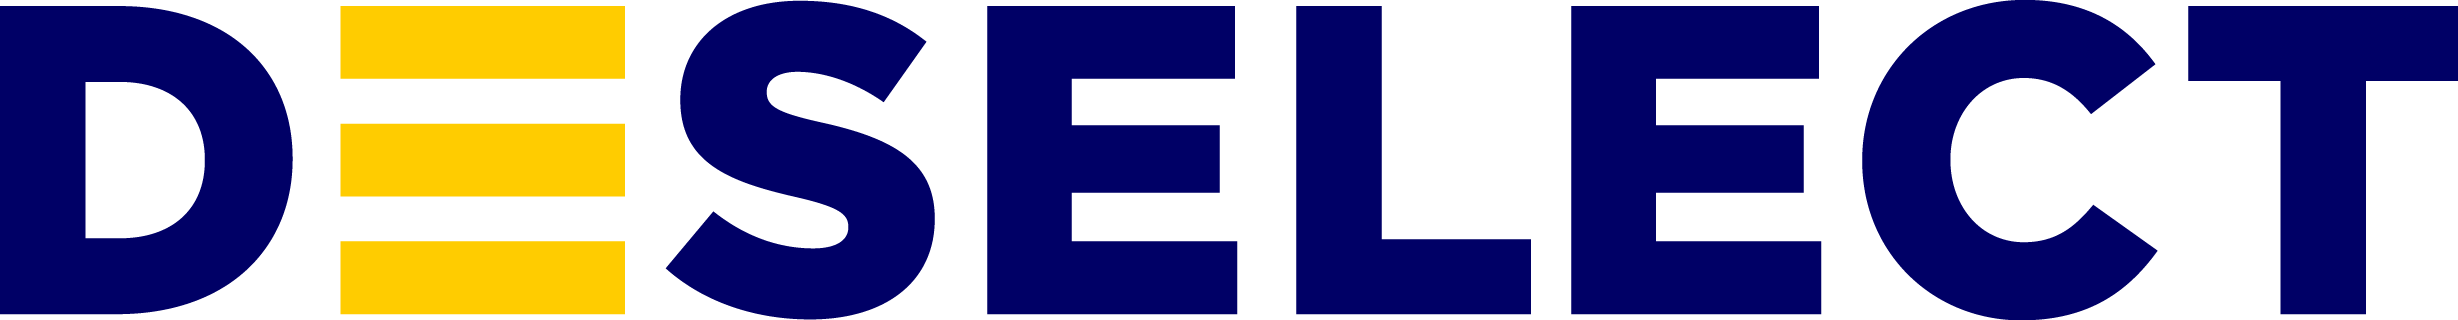 DESelect Logo